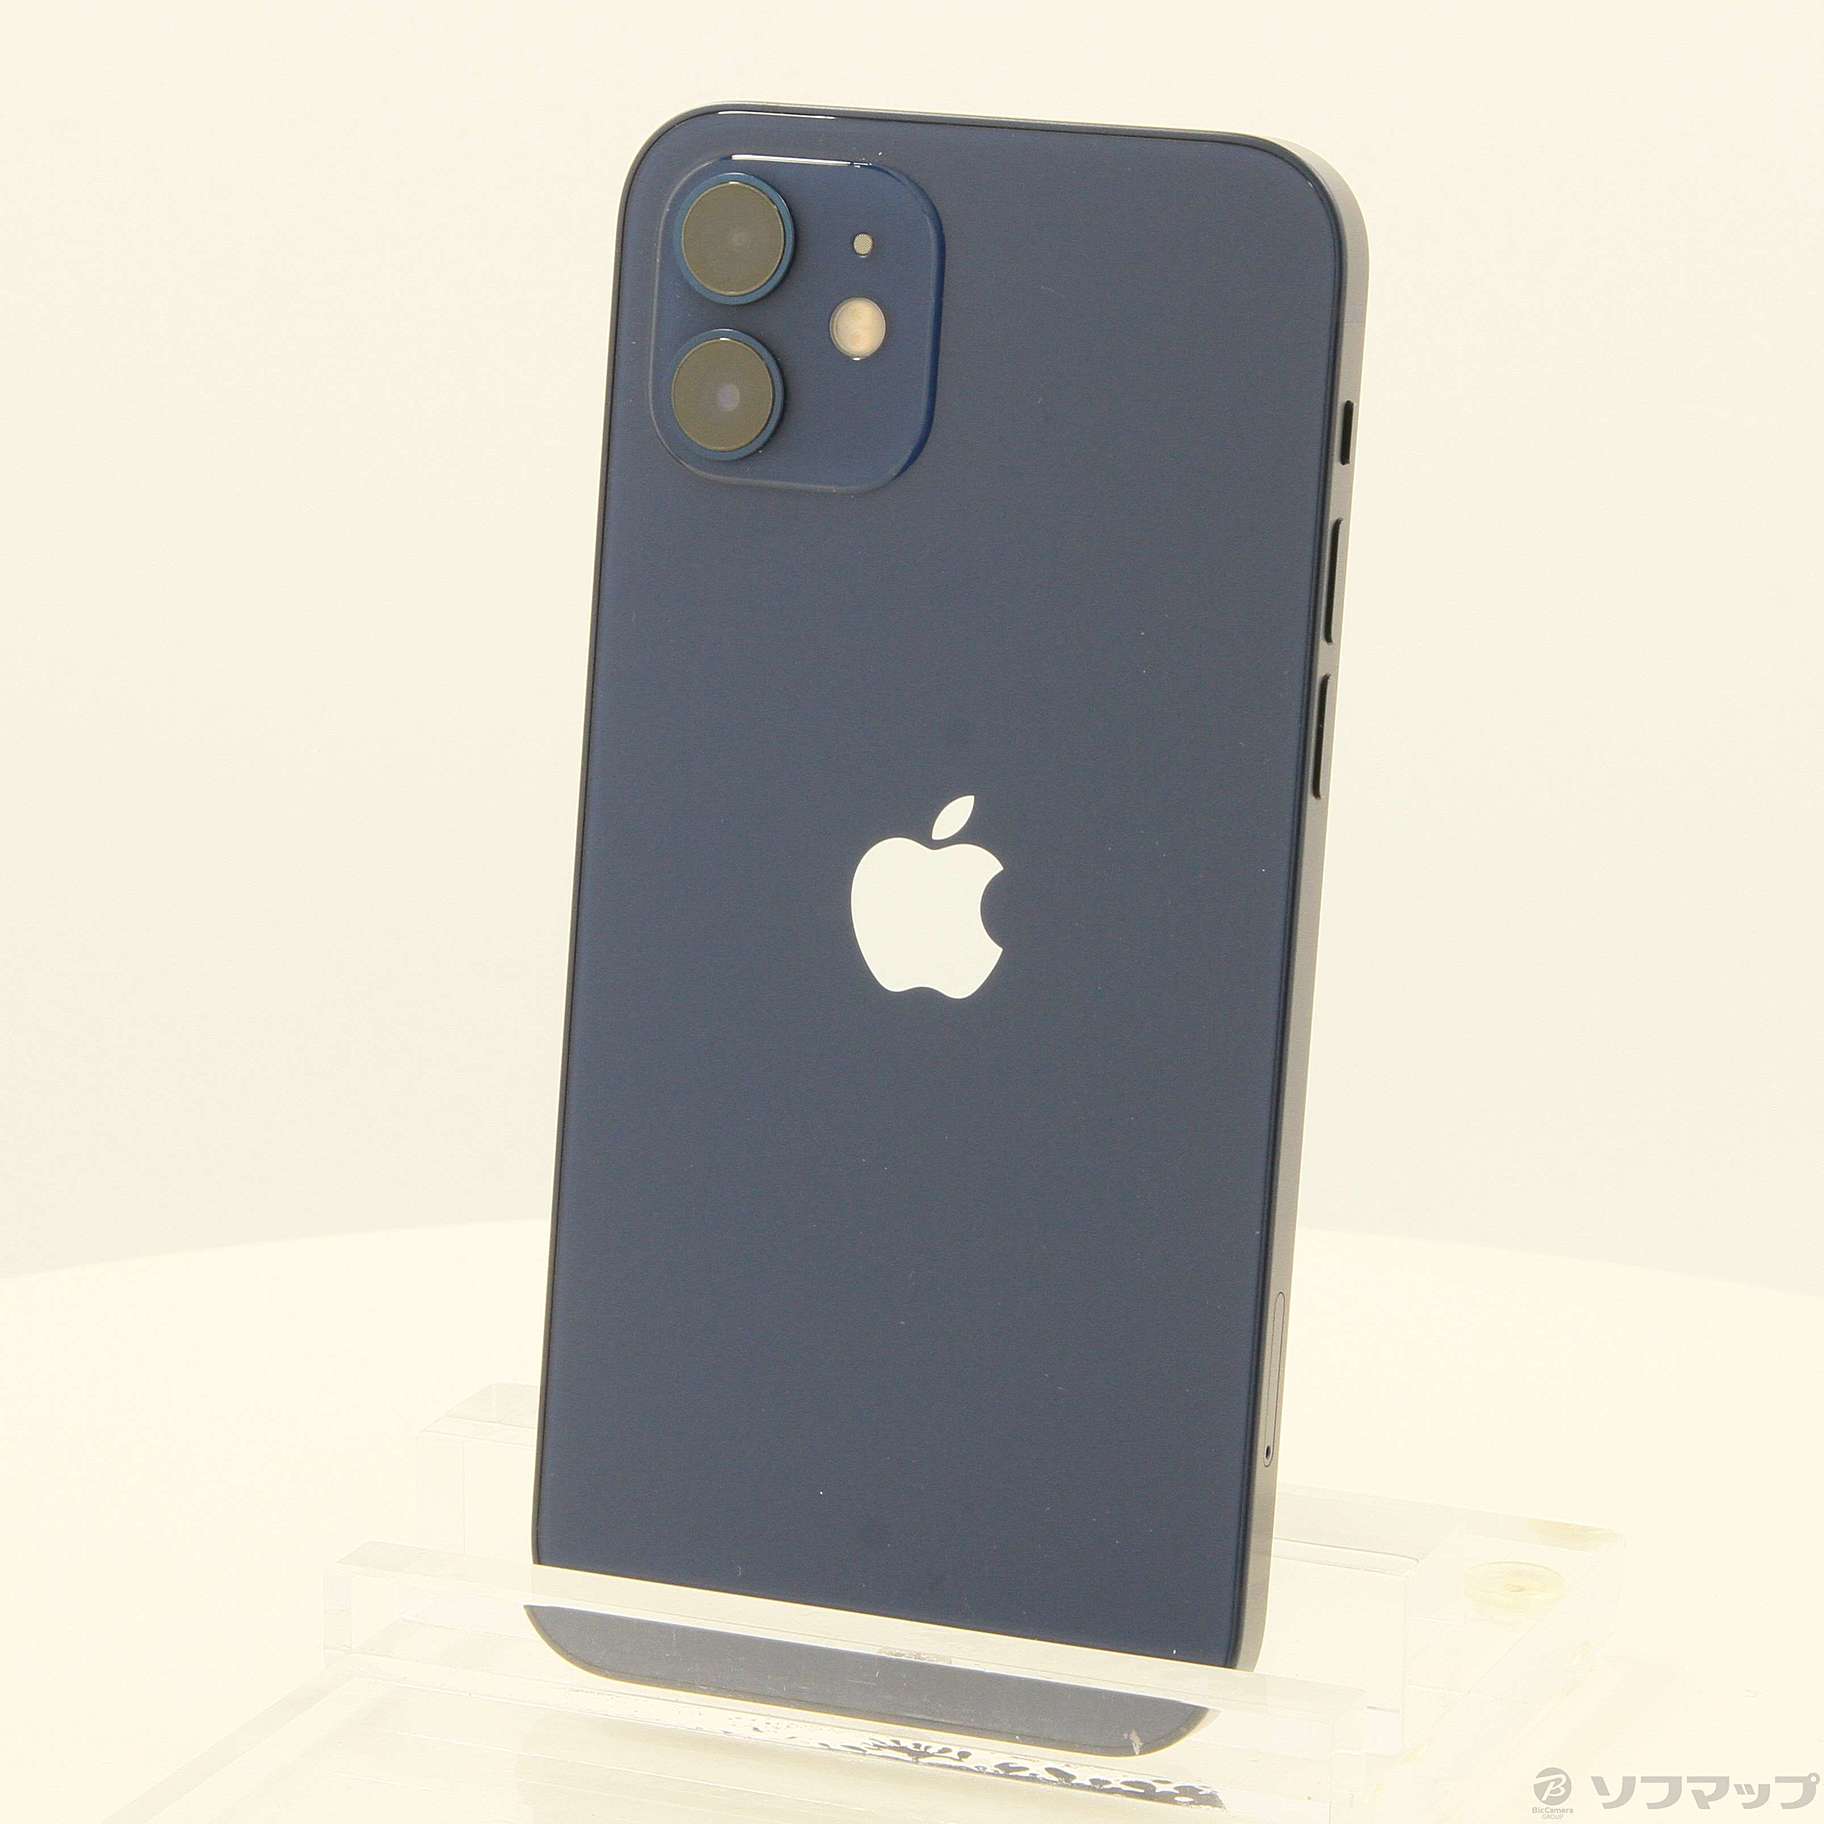 代引き不可 ブルー iPhone12 ブルー スマートフォン/携帯電話 64GB ブルー 携帯電話本体